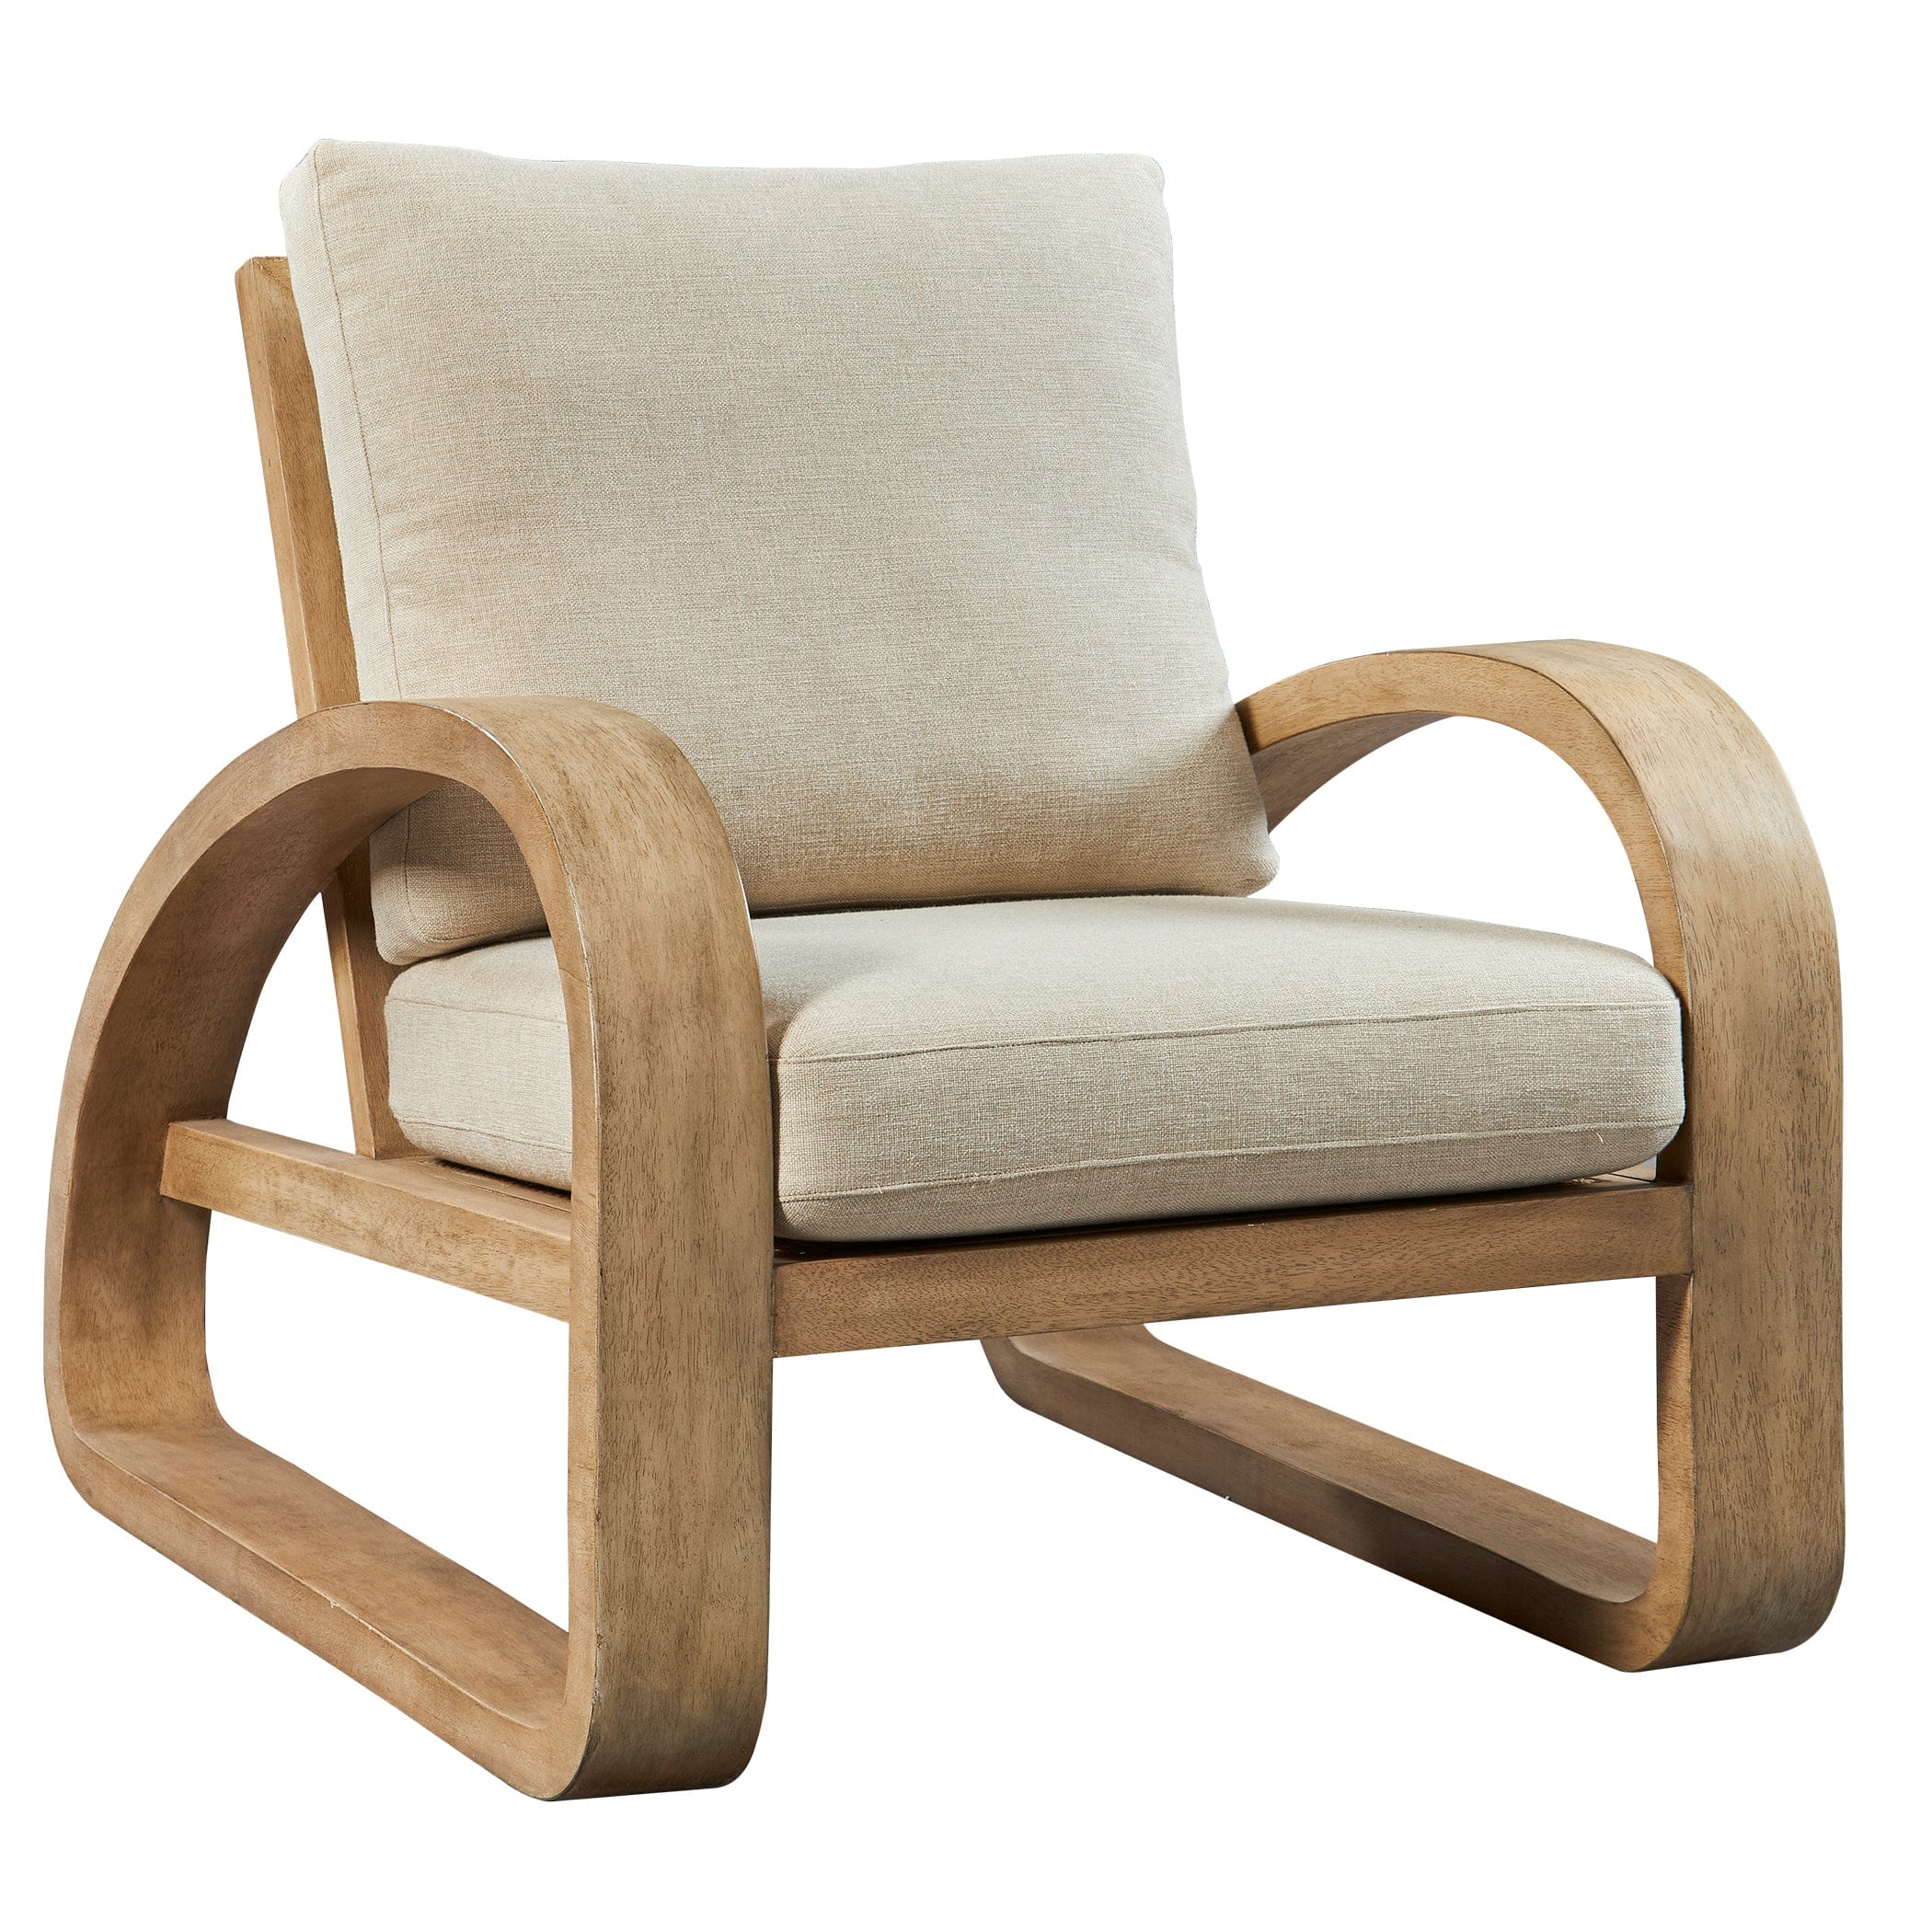 Barbora Wooden Accent Chair Uttermost